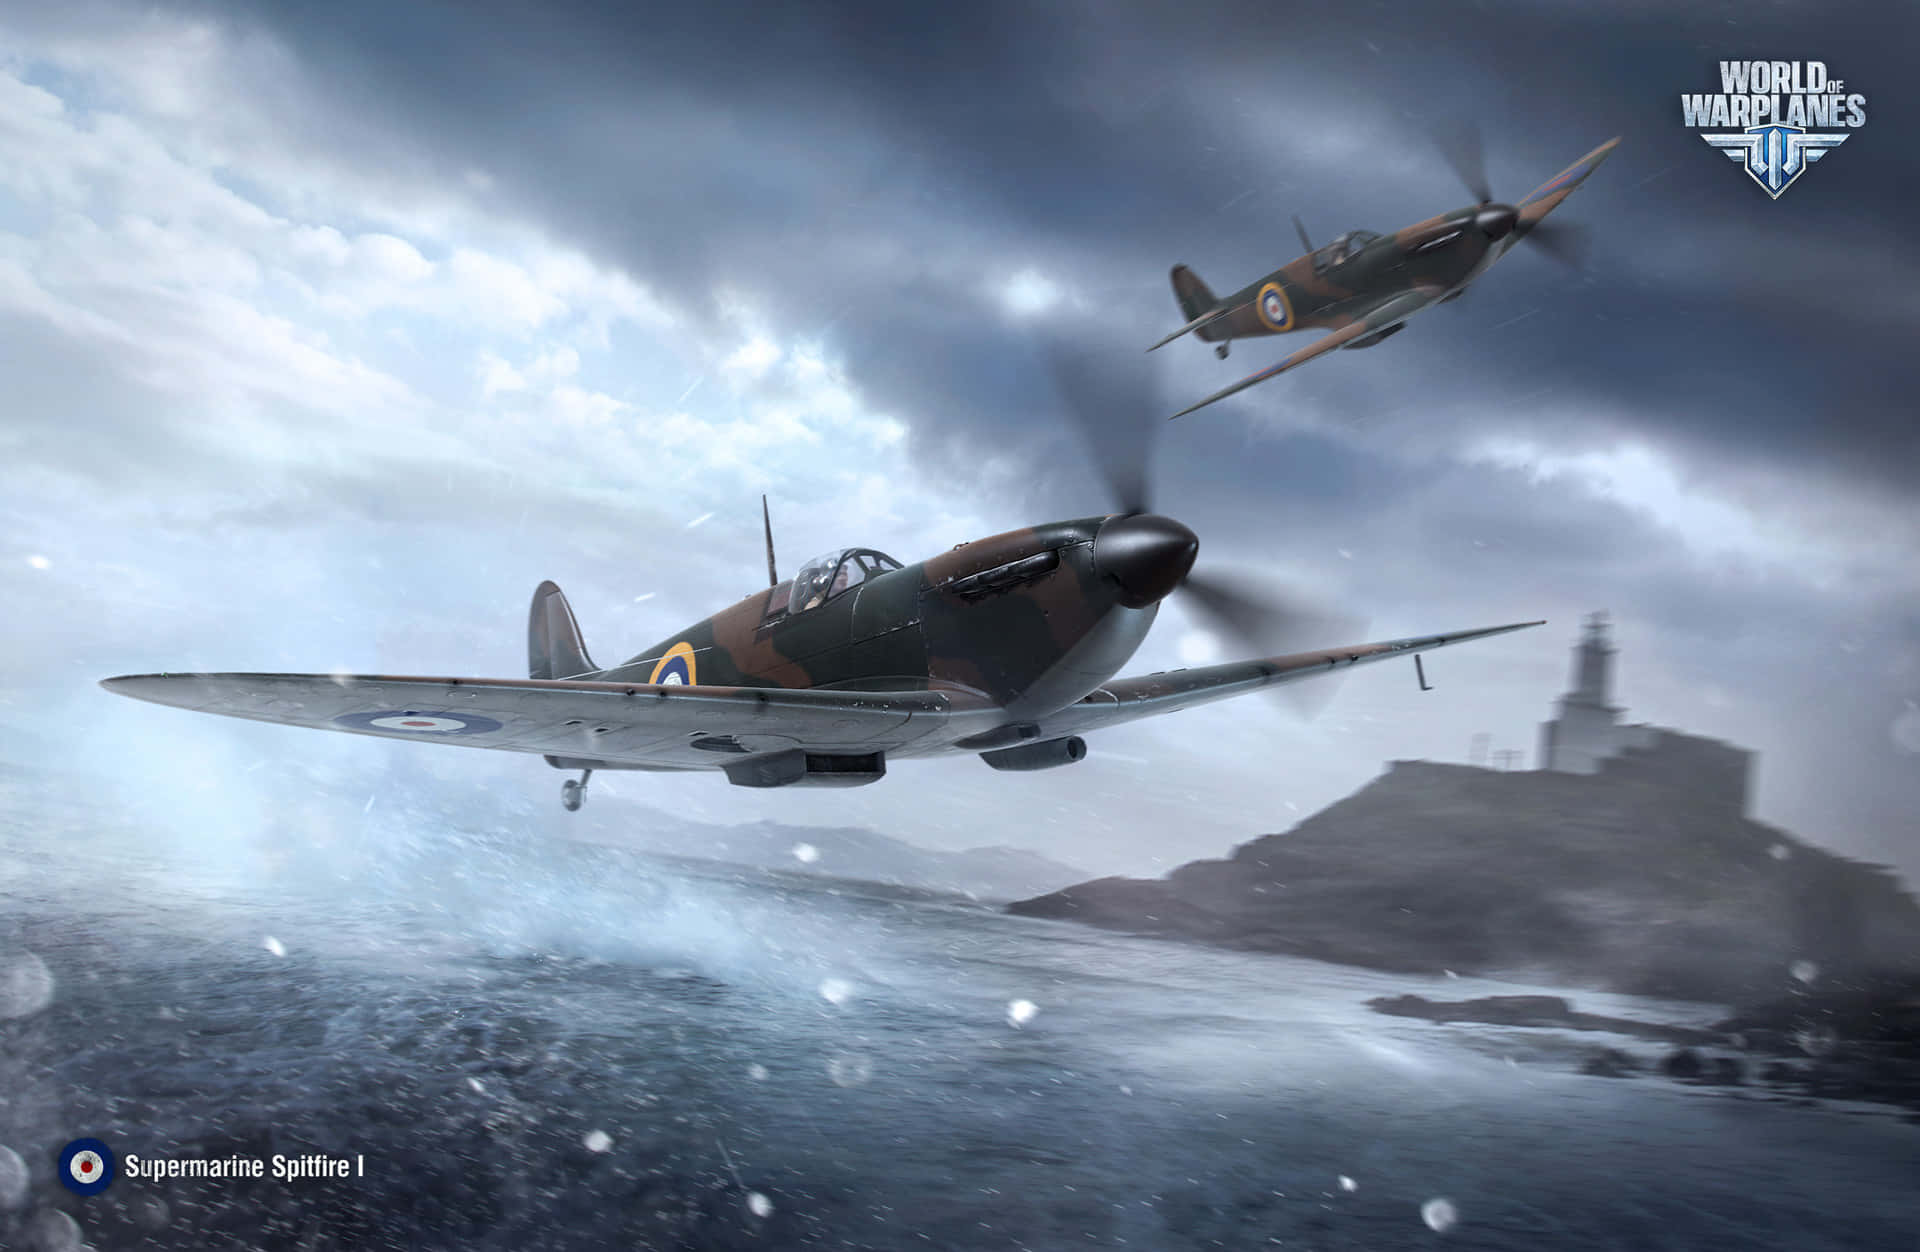 Enspitfire Krigsflygplan Från Andra Världskriget Som Flyger Högt På Himlen. Wallpaper